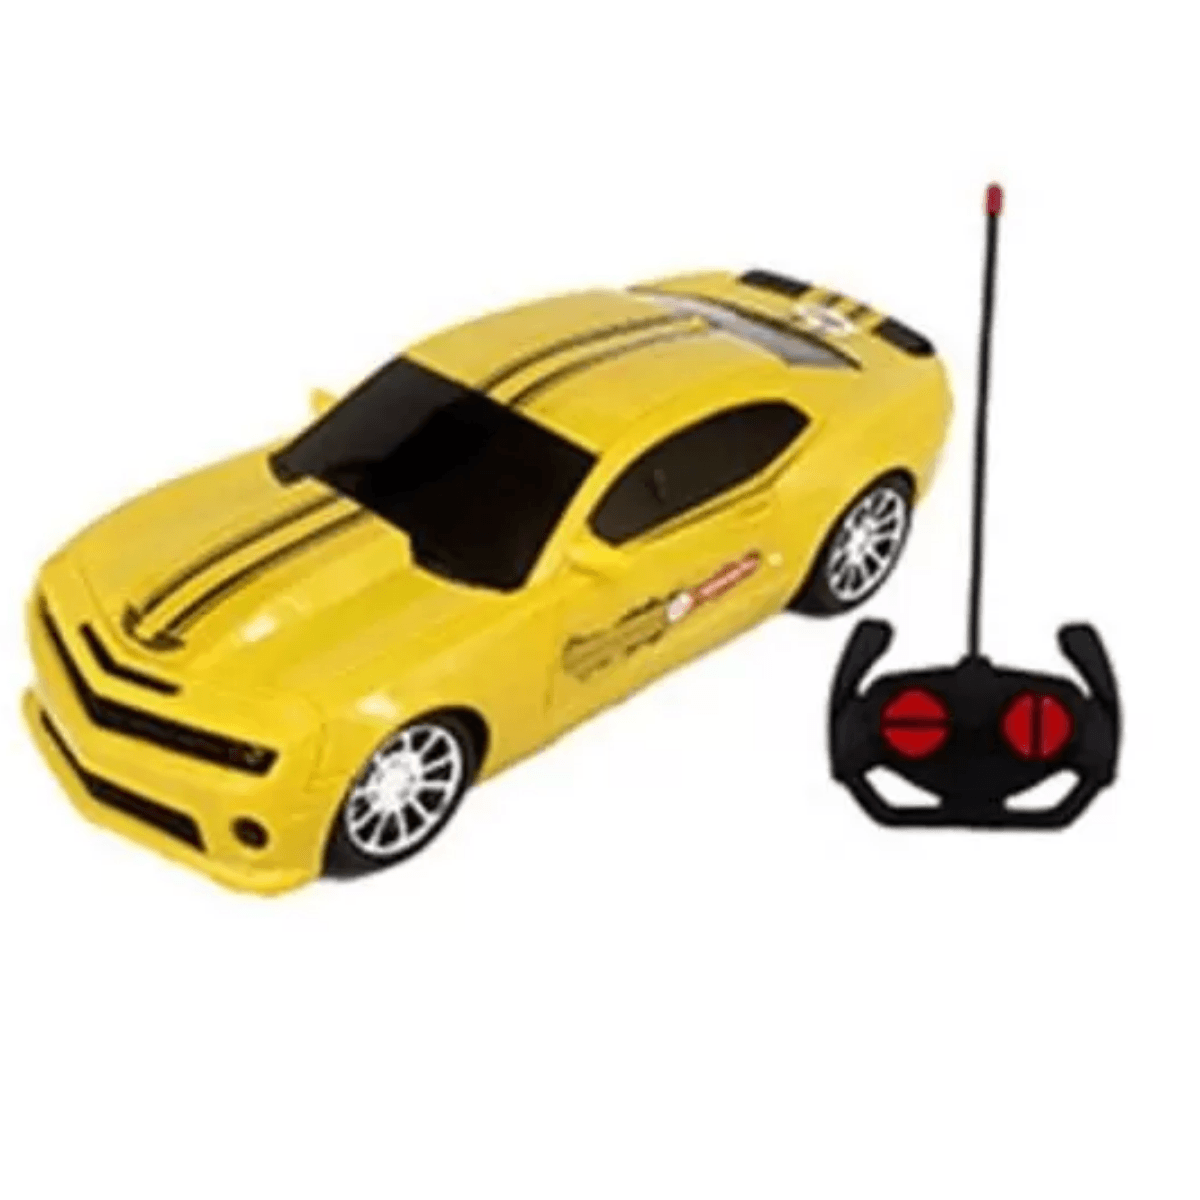 Veículo Carrinho Carro De Controle Remoto Supremus Gt Racer Amarelo -  Bateria Recarregável - Acende Os Faróis - Rádio Controle 07 Funções -  Estrela